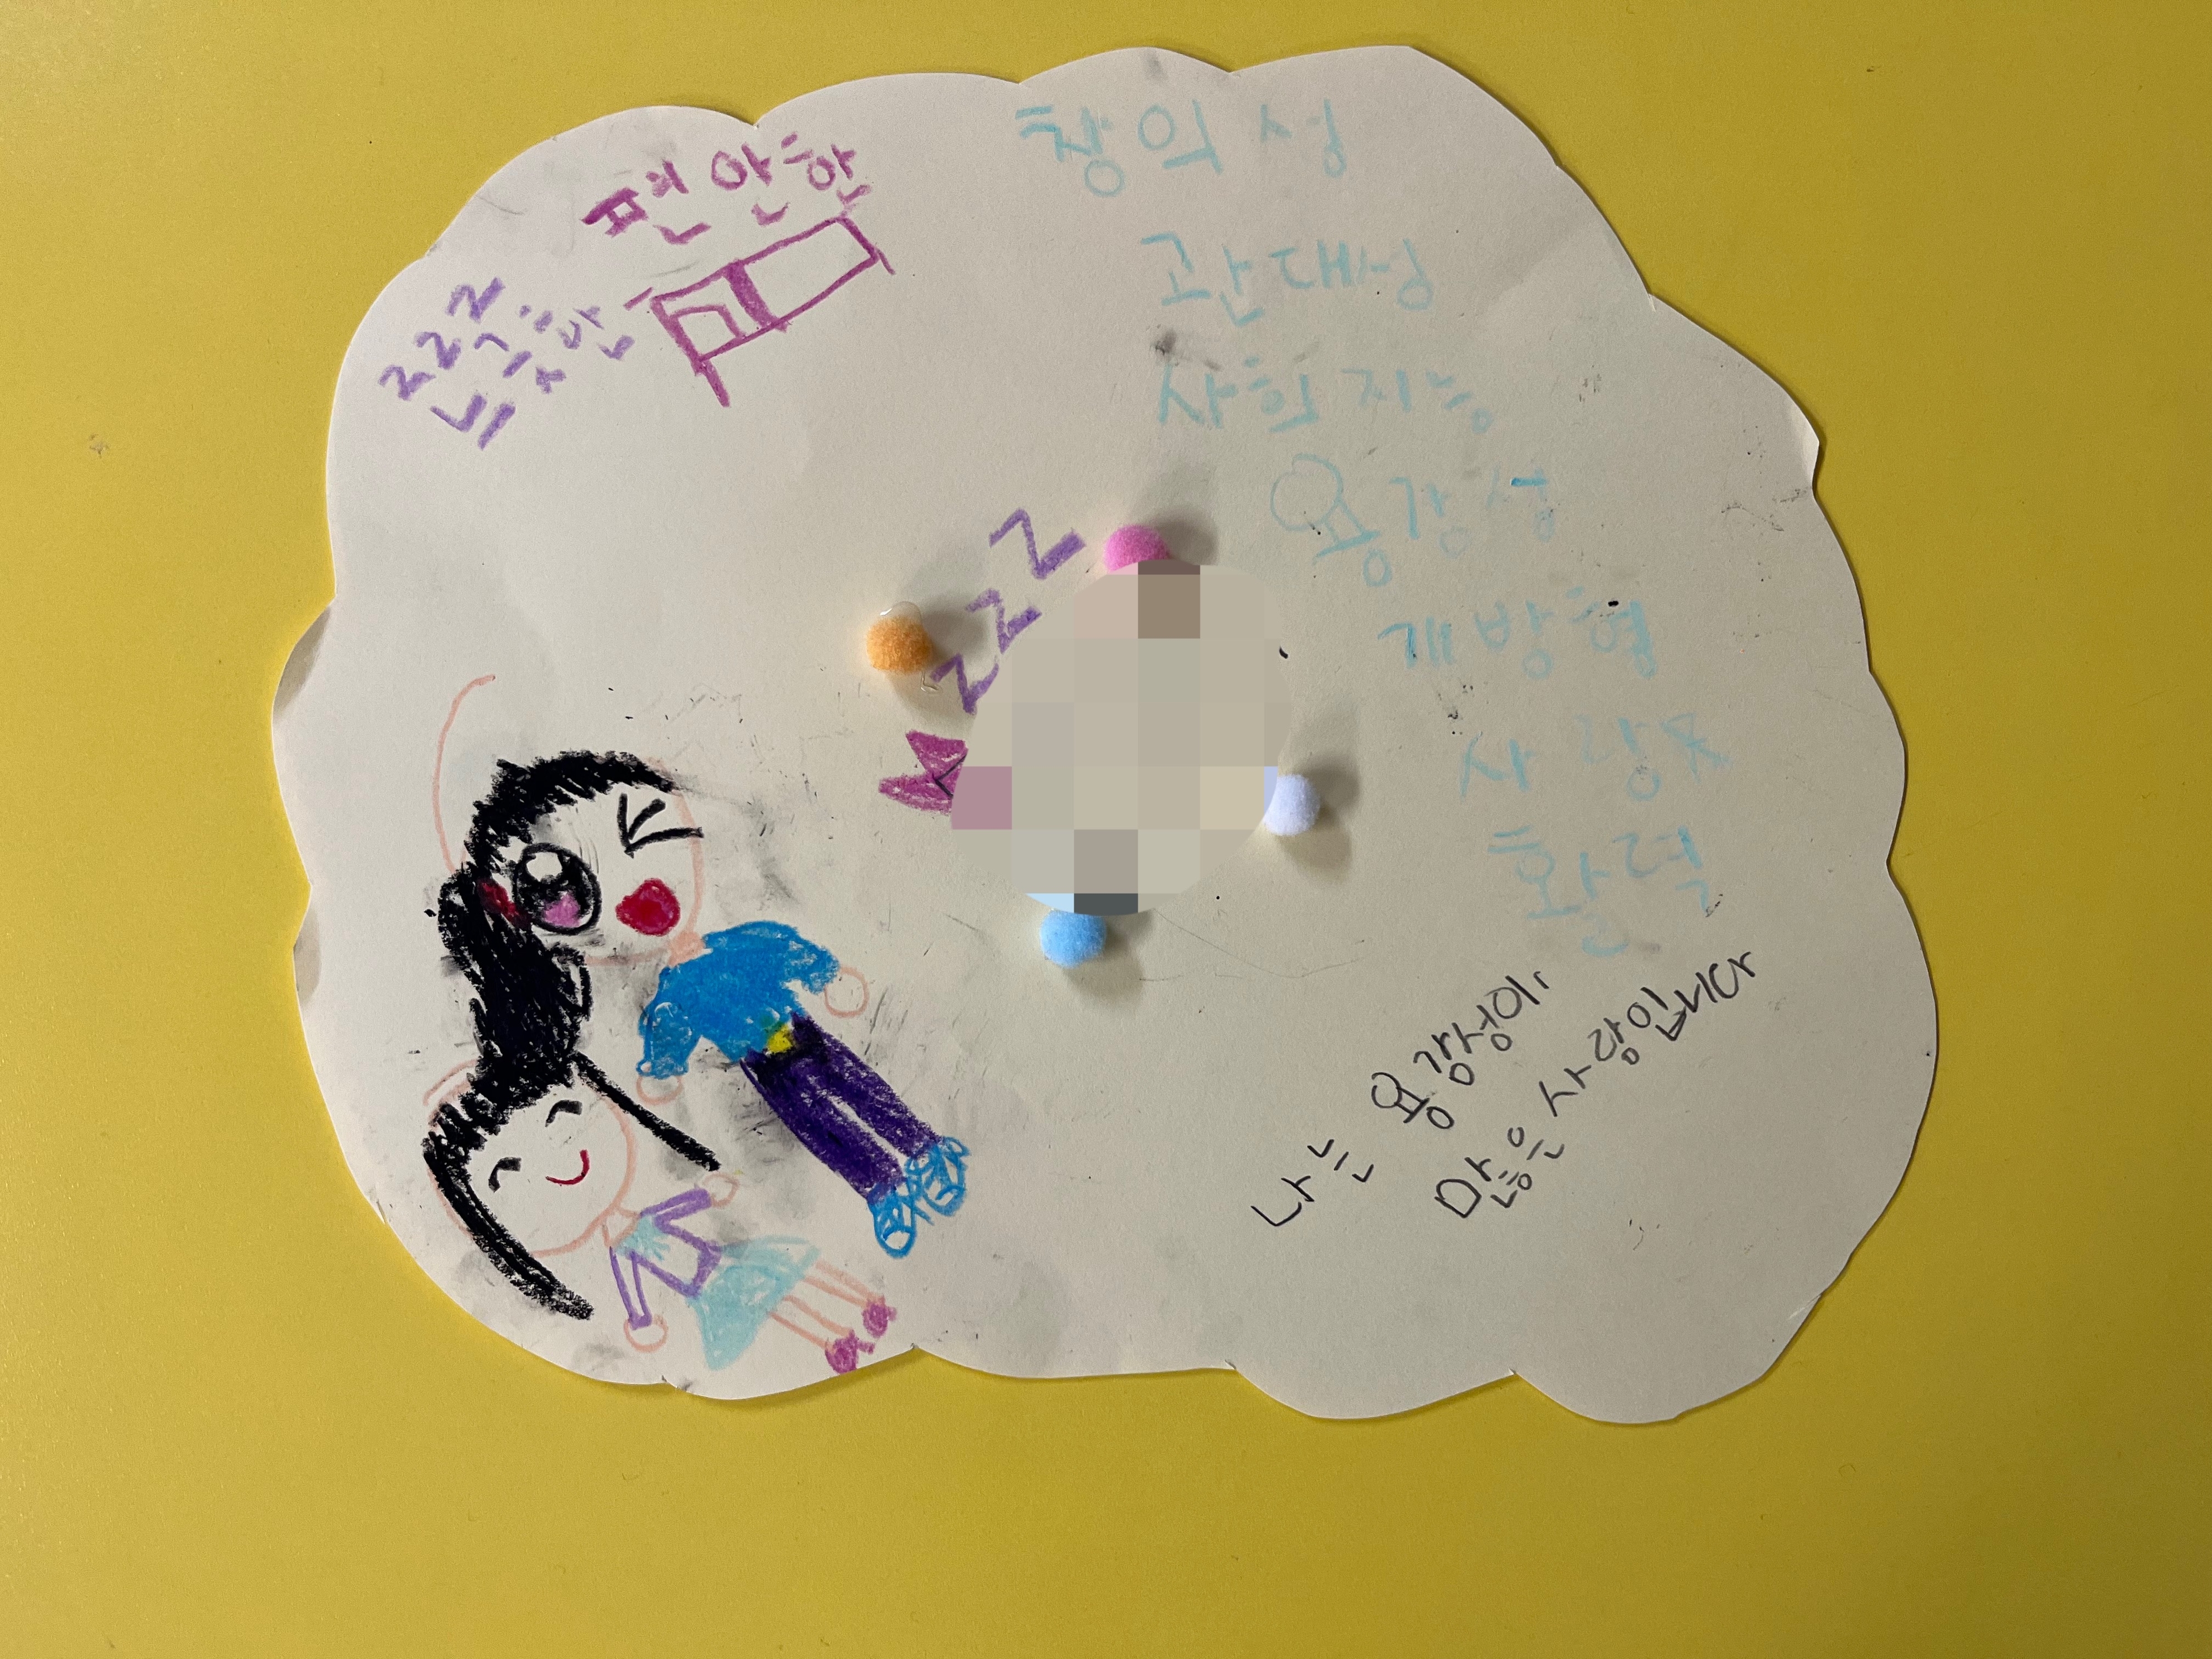 서울의 한 초등학교 위클래스에서 상담받은 아이가 “나는 용감성이 많은 사람”이라는 글과 함께 그림을 그렸다. 위(Wee)클래스 제공